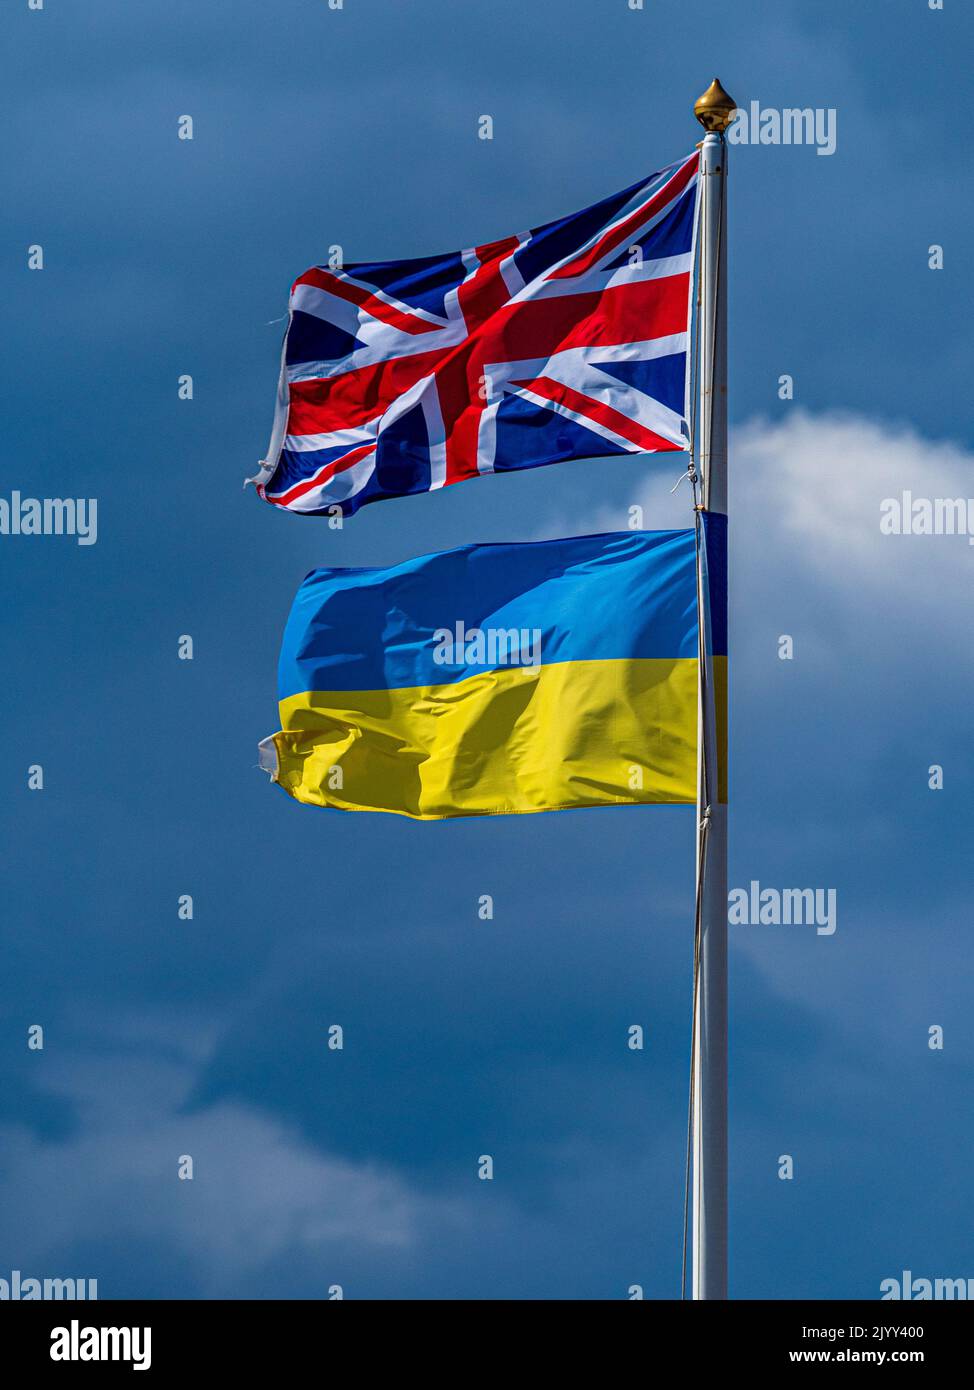 Les drapeaux du Royaume-Uni et de l'Ukraine se rassemblent pour manifester leur solidarité. Drapeaux britanniques et ukrainiens. Drapeau britannique et ukrainien. Banque D'Images